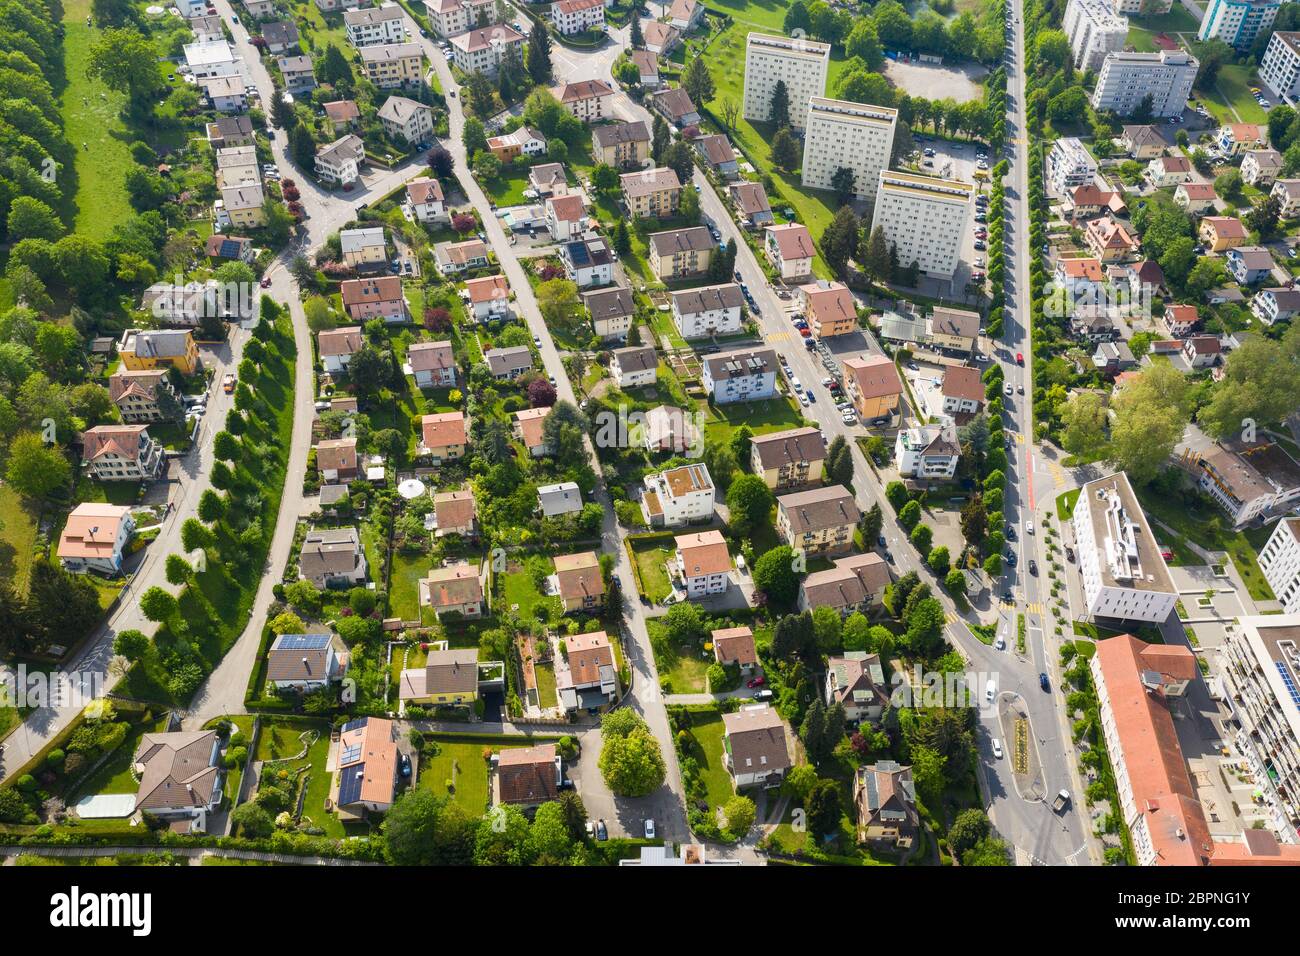 Vue aérienne d'un quartier résidentiel mêlant maisons familiales simples et immeubles d'appartements à Fribourg en Suisse Banque D'Images